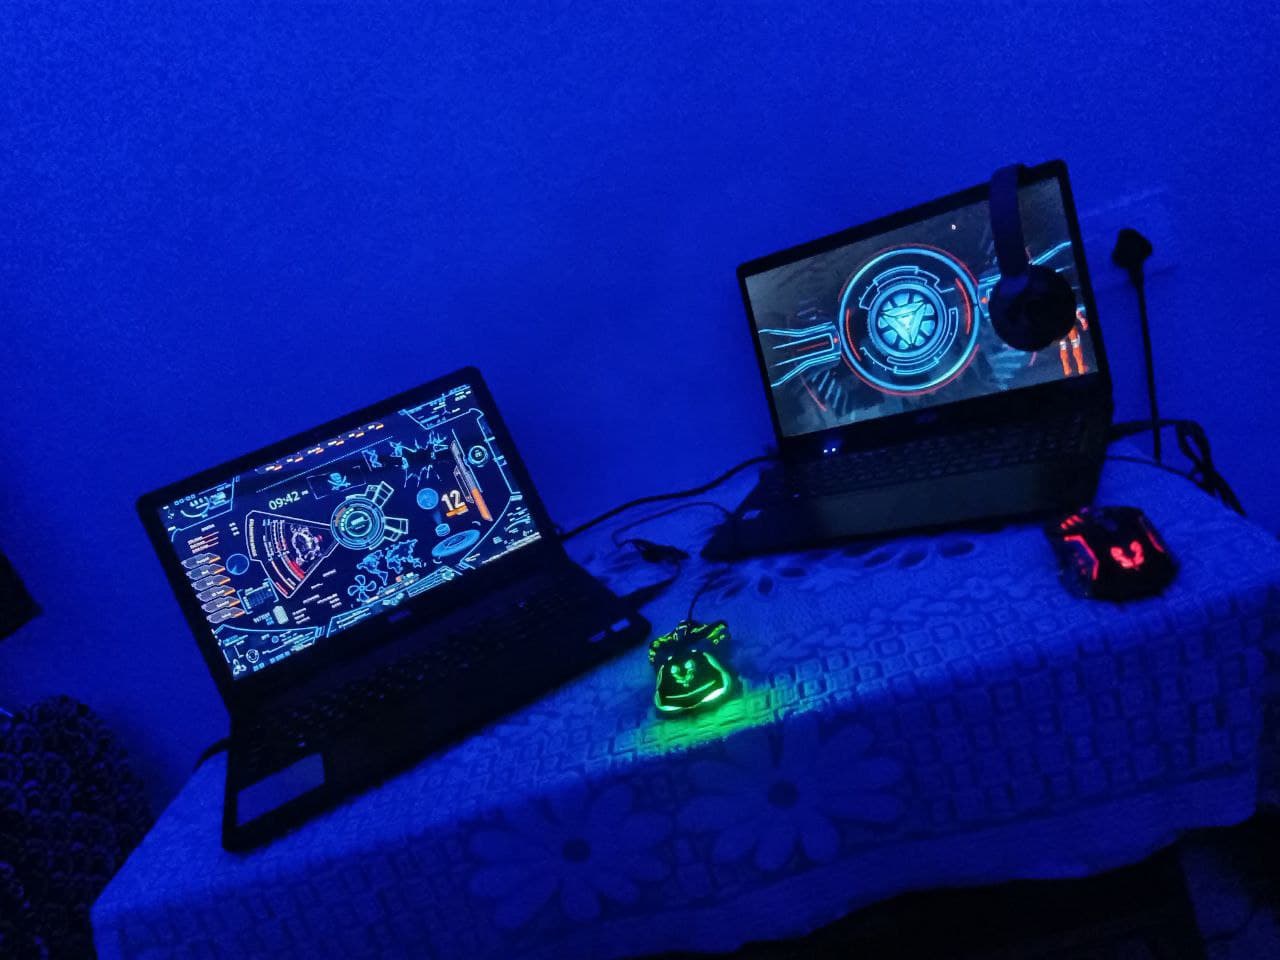 My Gaming PC [laptops] Setup!!!!!!